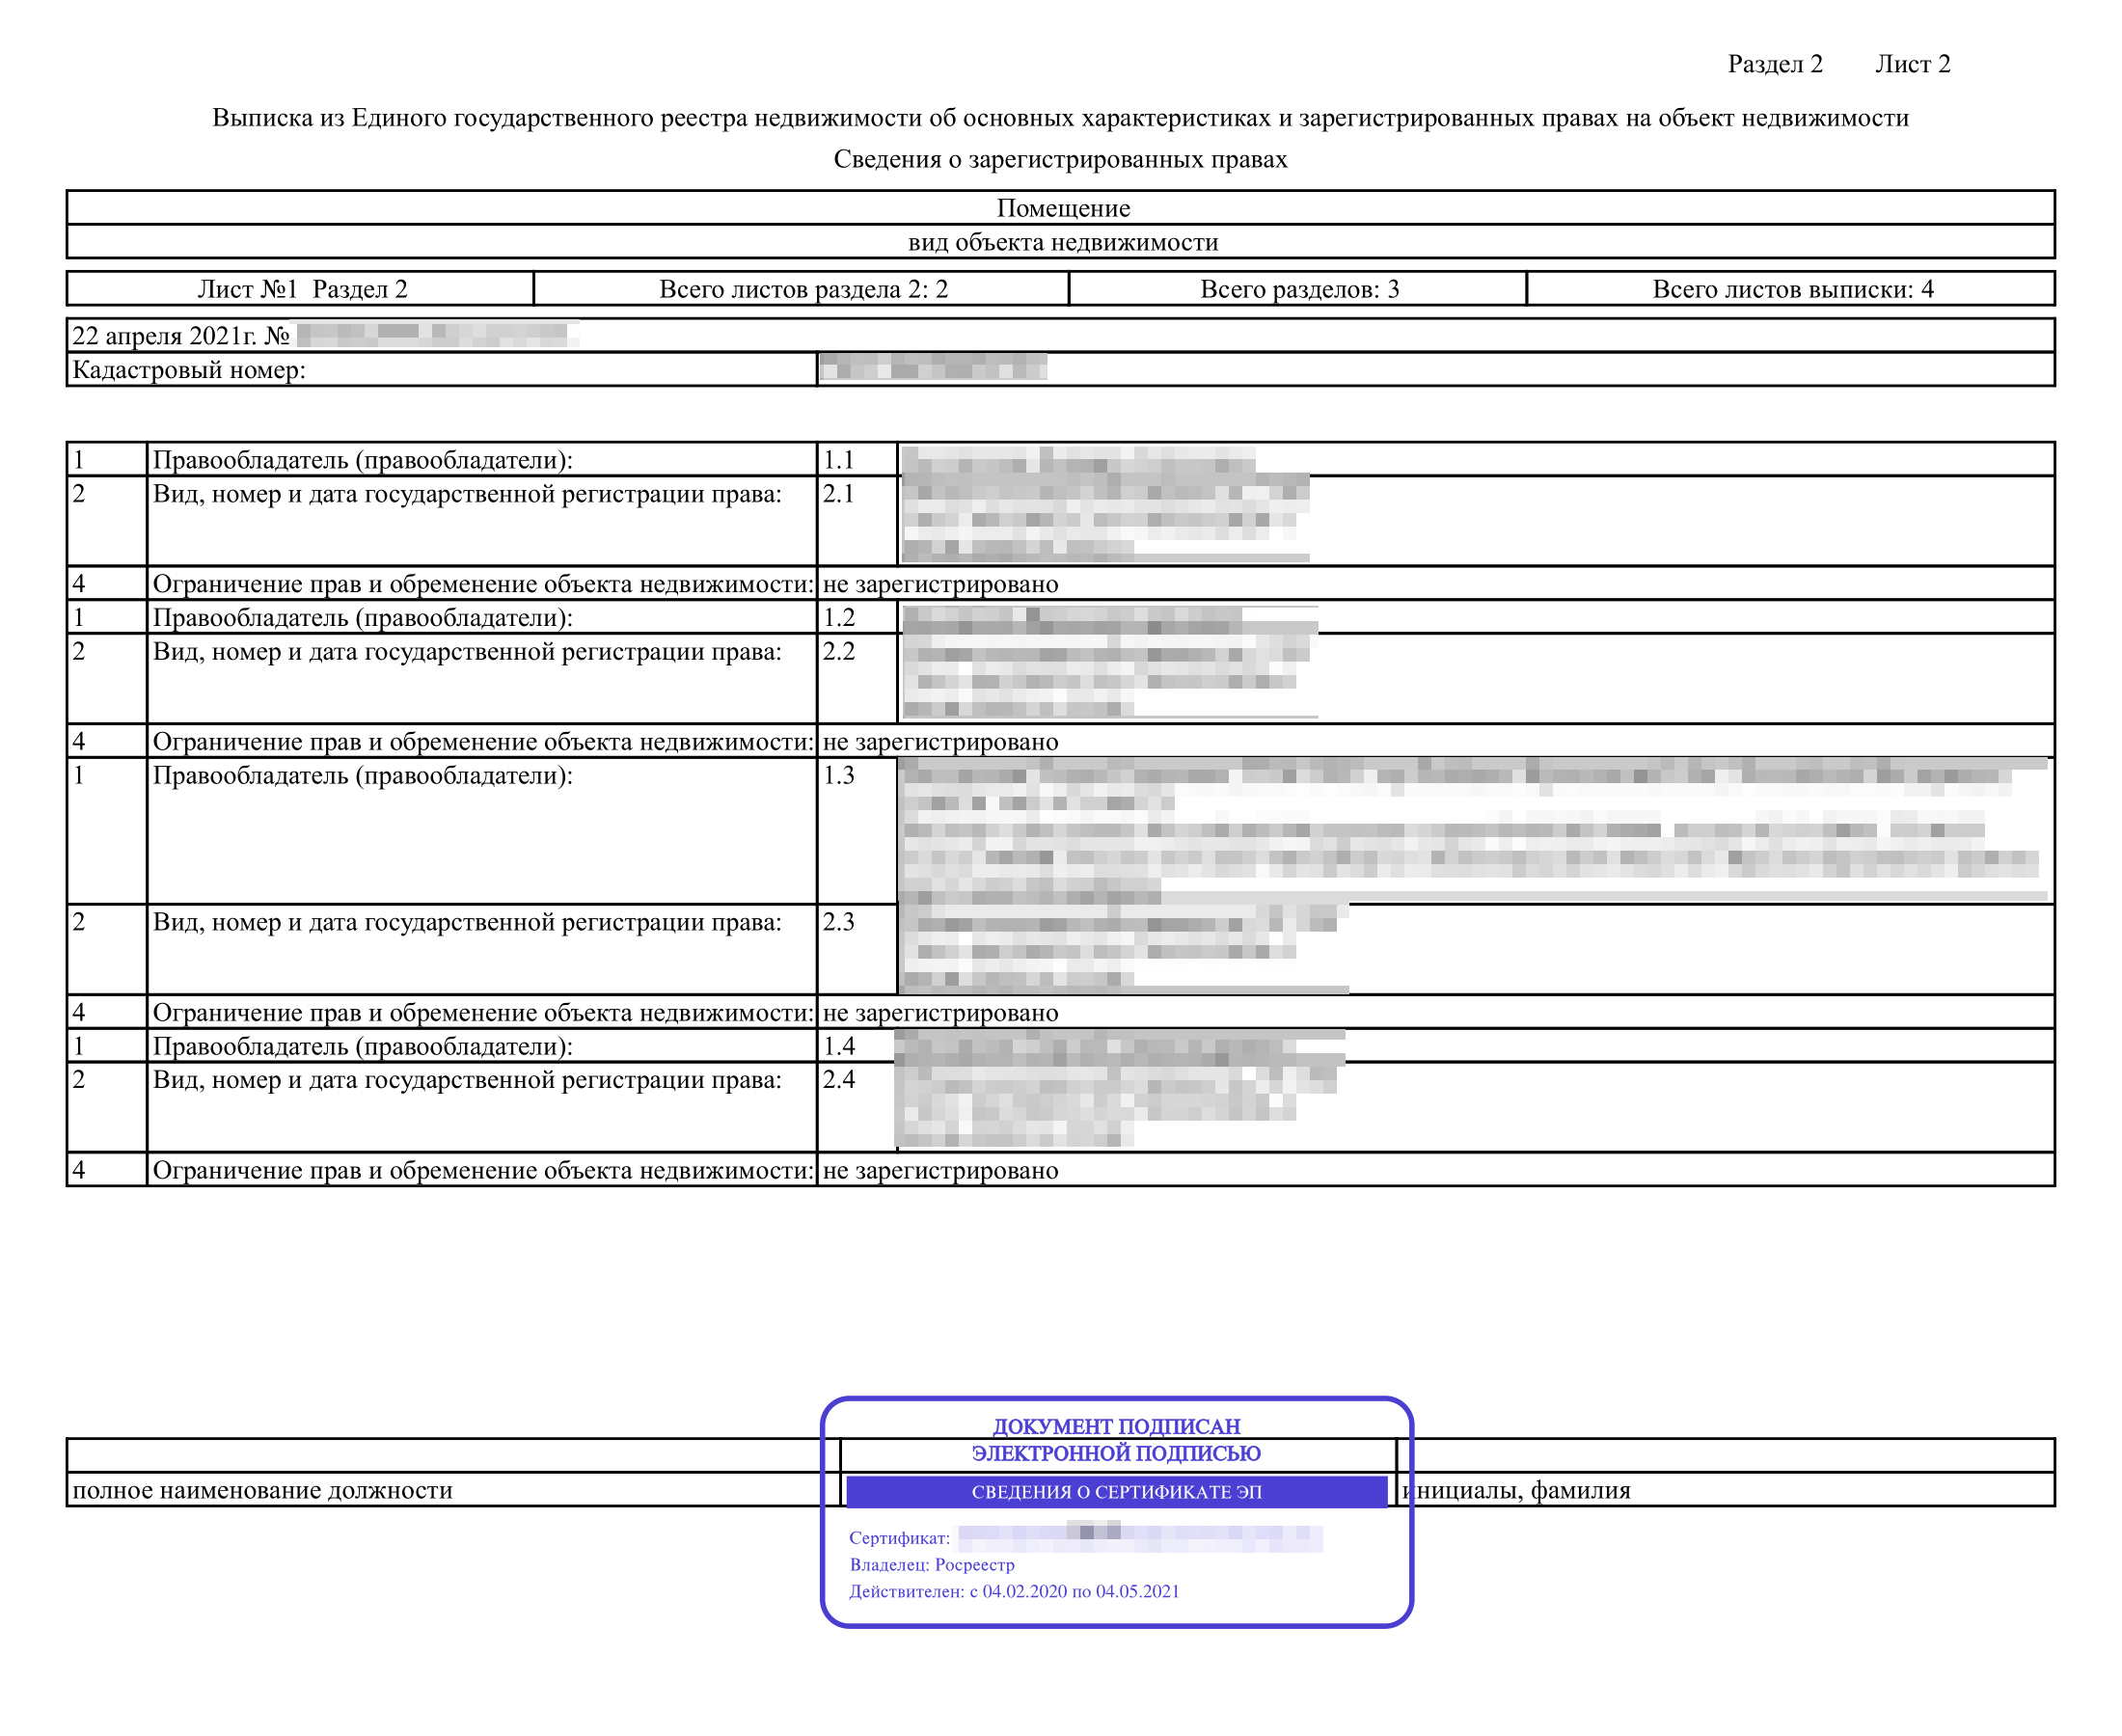 Вот так выглядит электронная выписка из ЕГРН об основных характеристиках и зарегистрированных правах на объект недвижимости, если ее заказал собственник